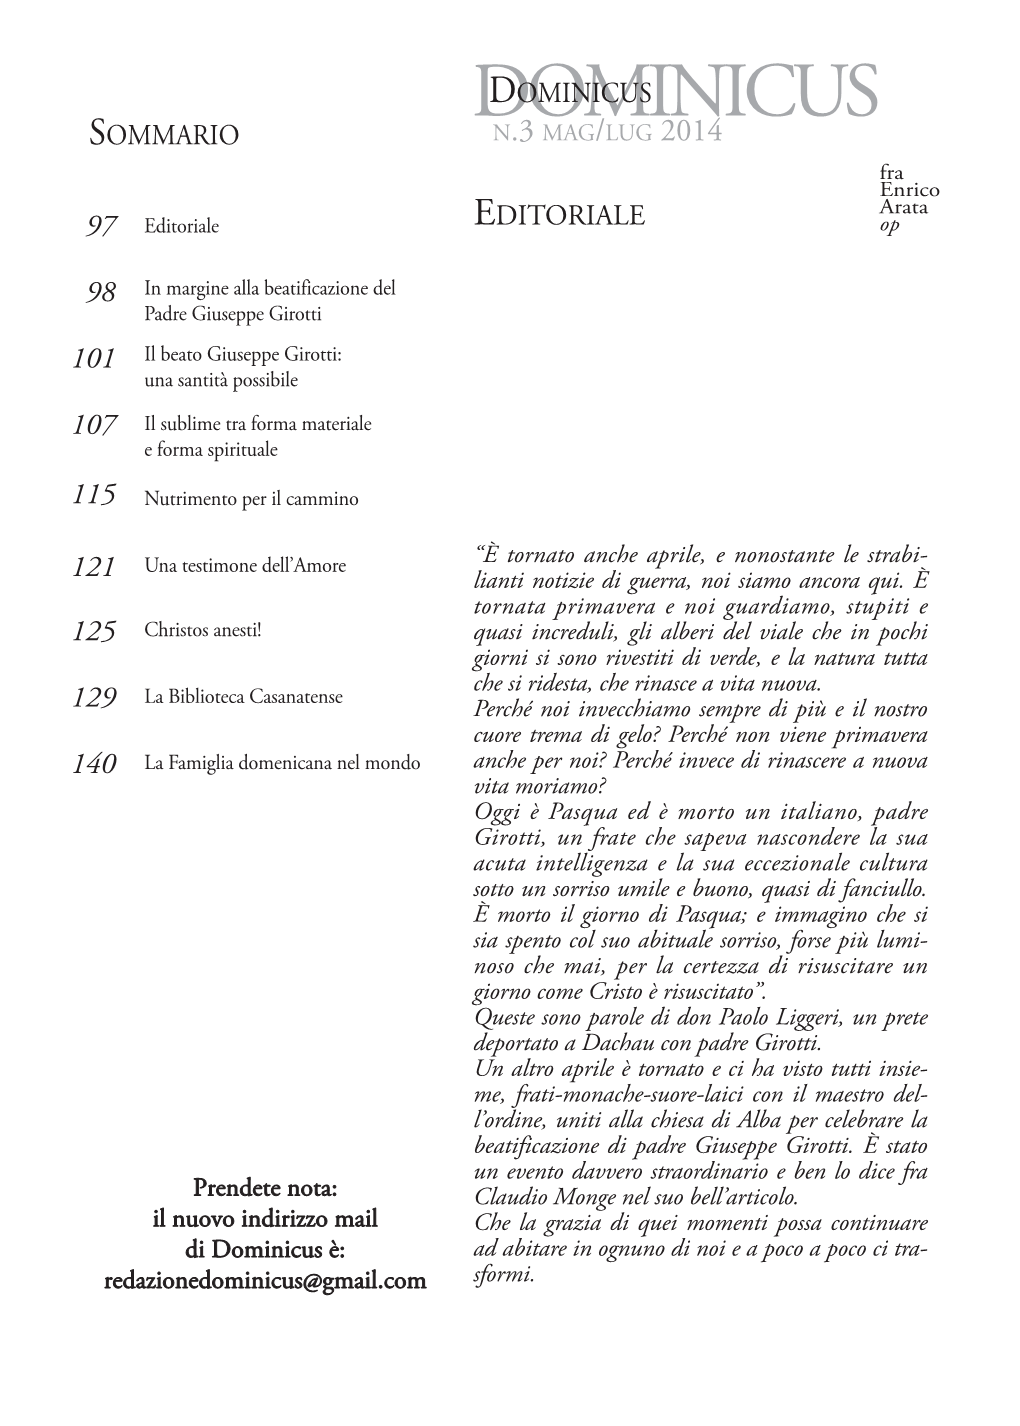 DOMINICUSDOMINICUS SOMMARIO N.3 MAG/LUG 2014 Fra Enrico Arata 97 Editoriale EDITORIALE Op